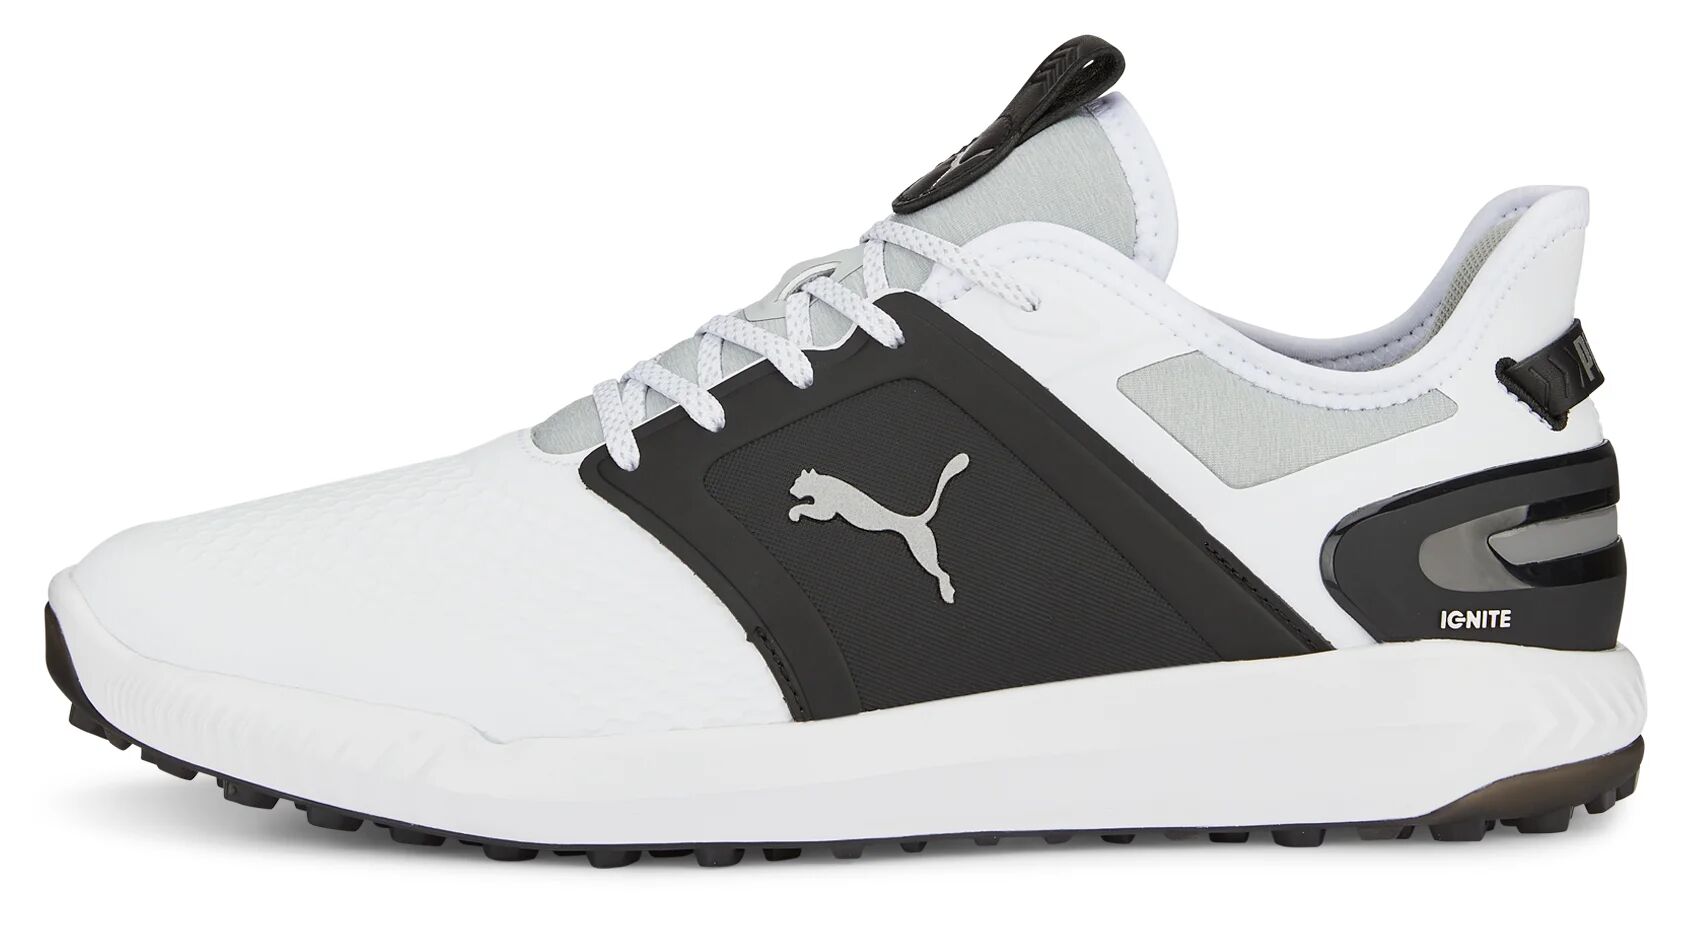 IGNITE Elevate Golf Shoes - PUMA White/PUMA Black/Metallic Silver - 7.5 - WIDE